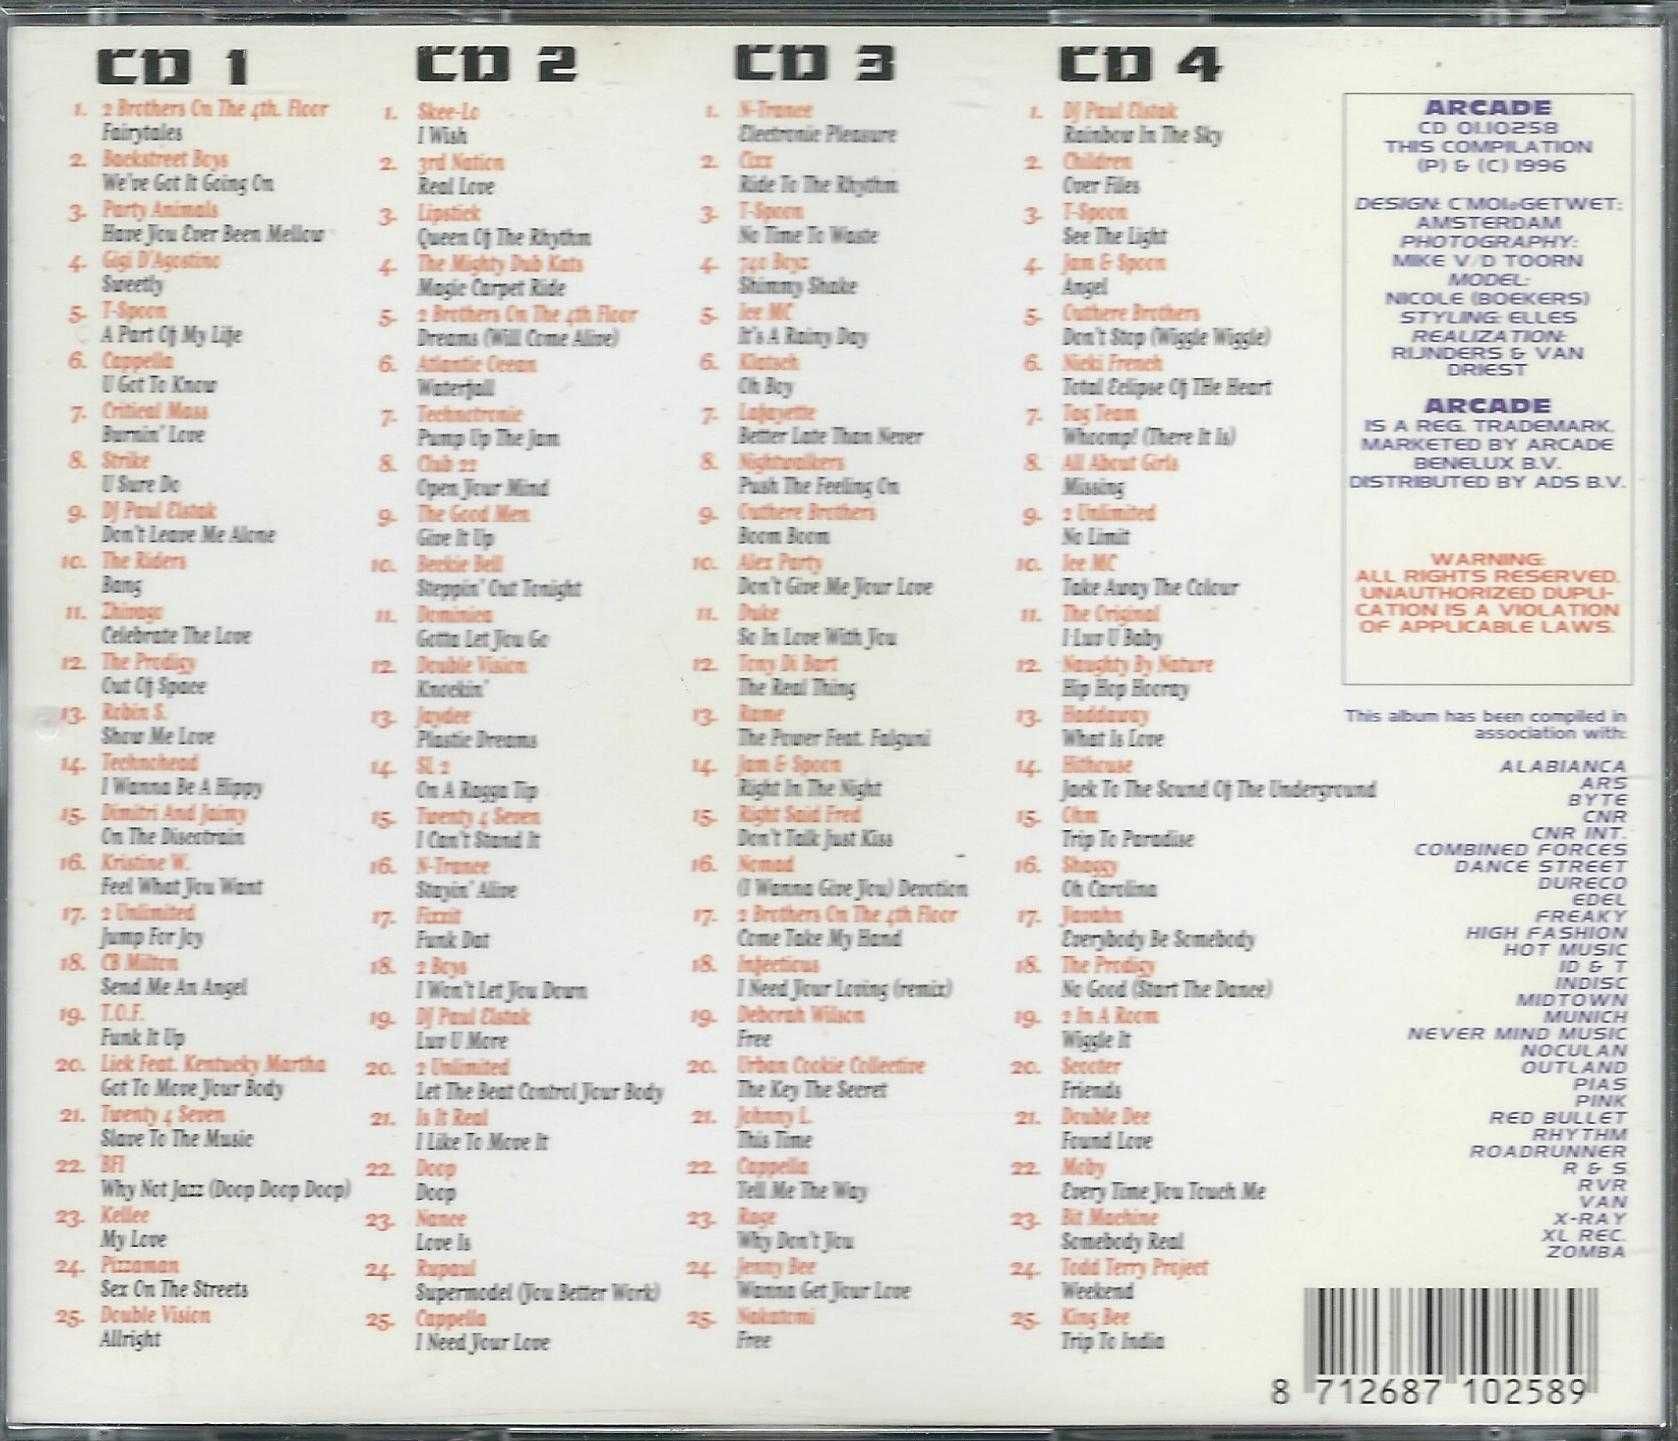 4 CD Mega Dance Top 100 (1996) (Fat Box Case) (Arcade)